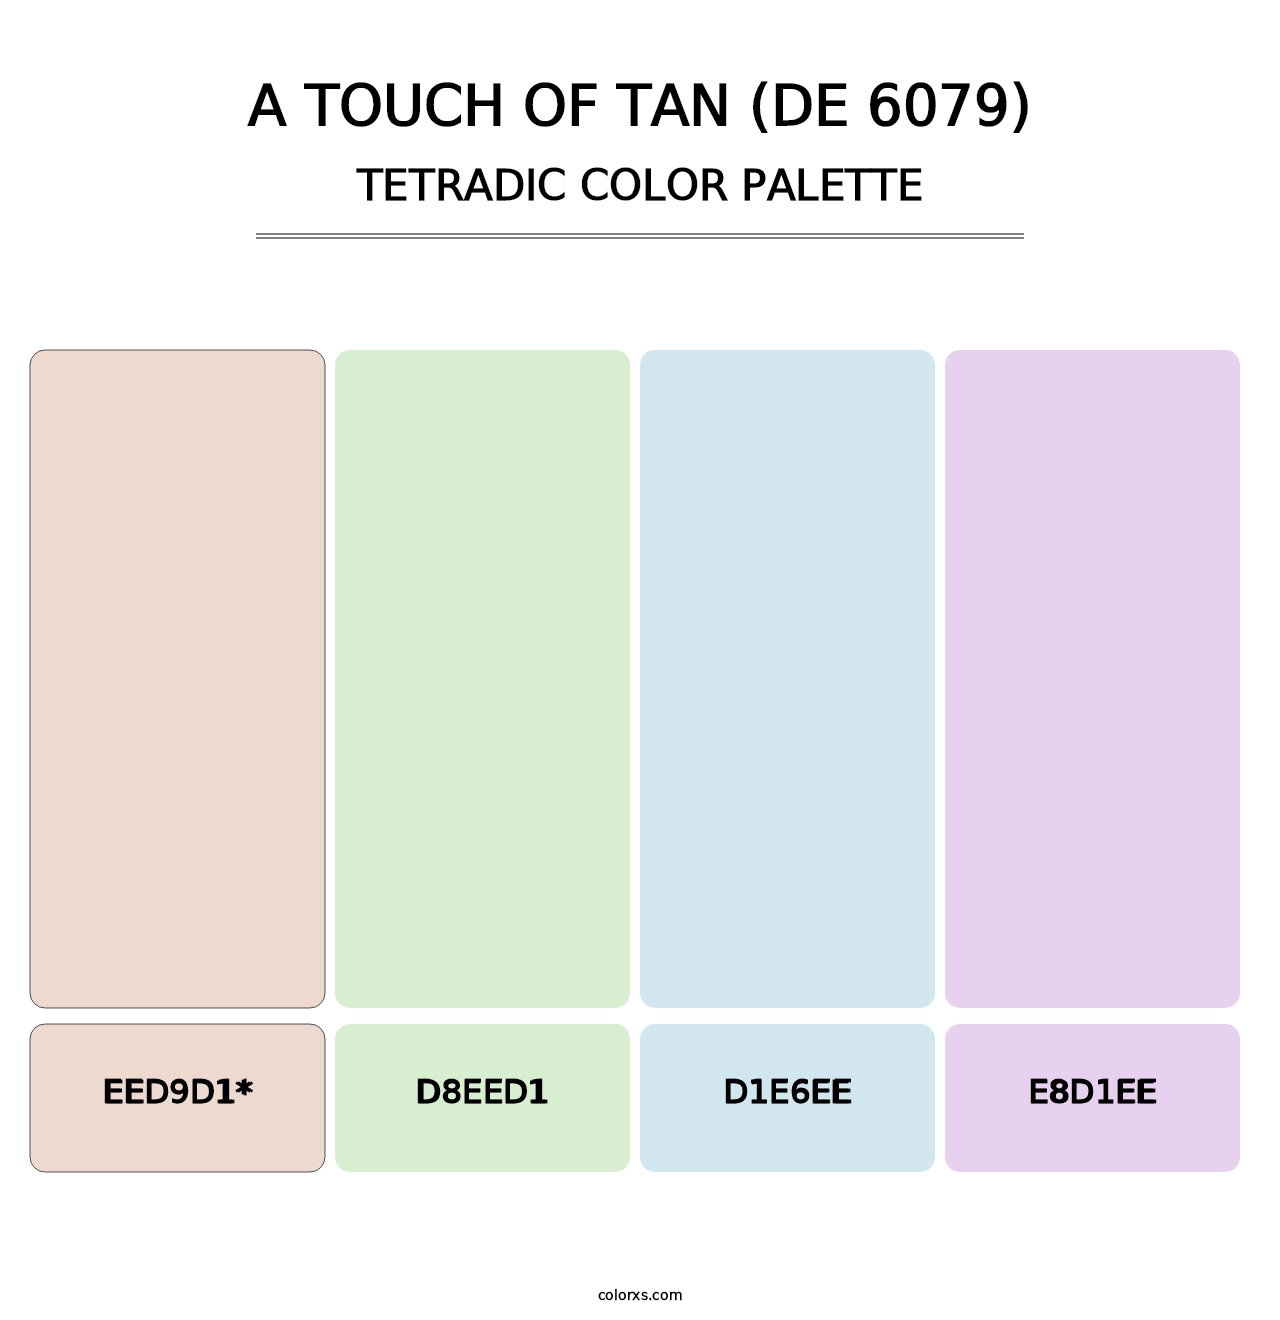 A Touch of Tan (DE 6079) - Tetradic Color Palette